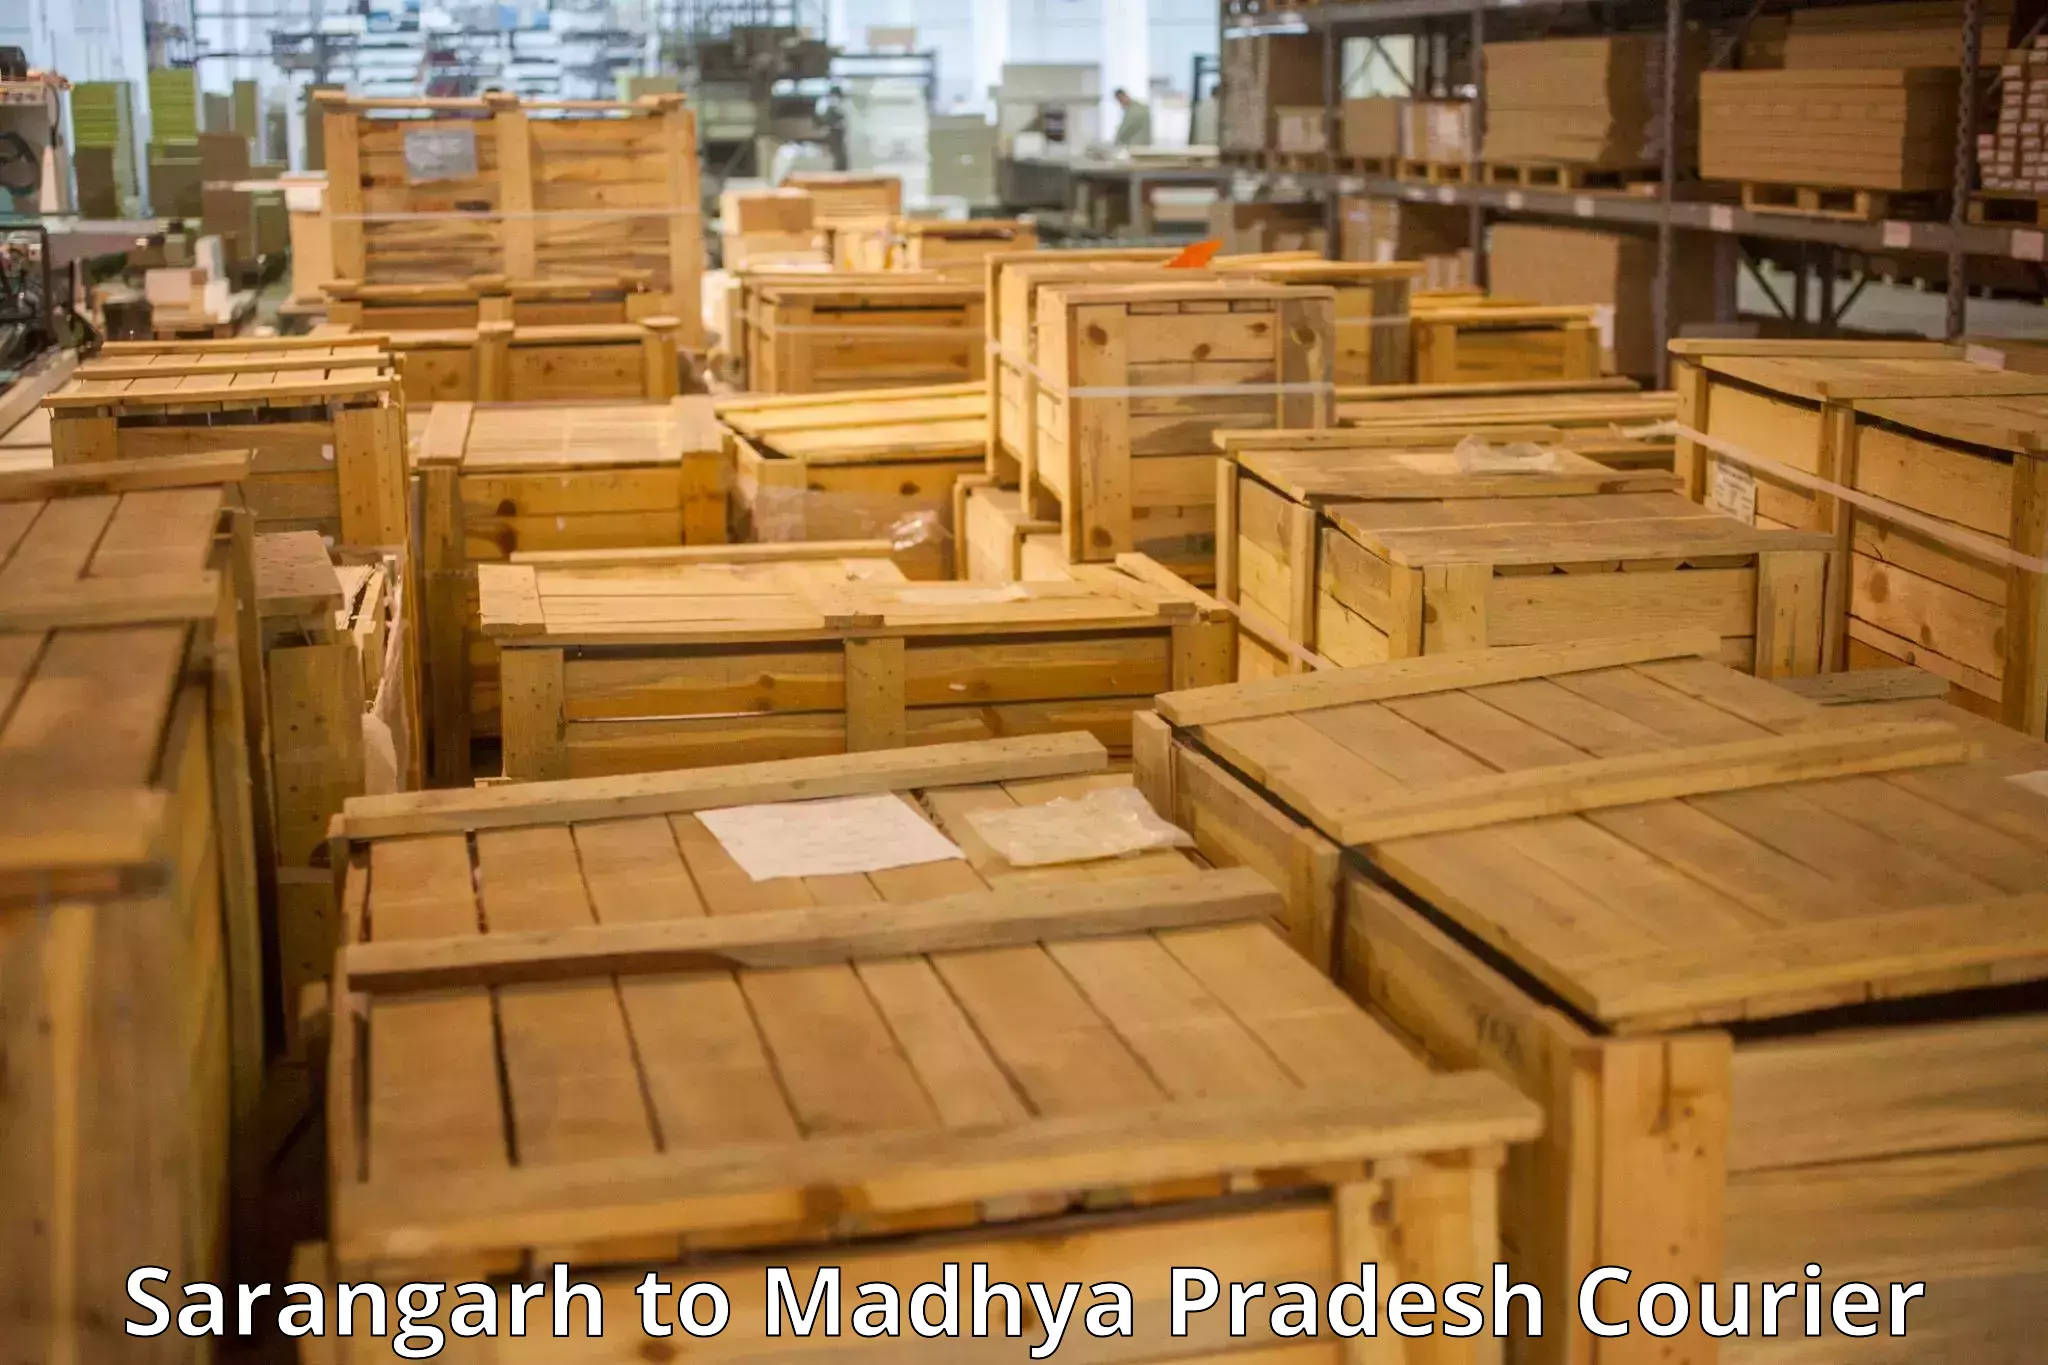 Baggage courier strategy Sarangarh to Madhya Pradesh